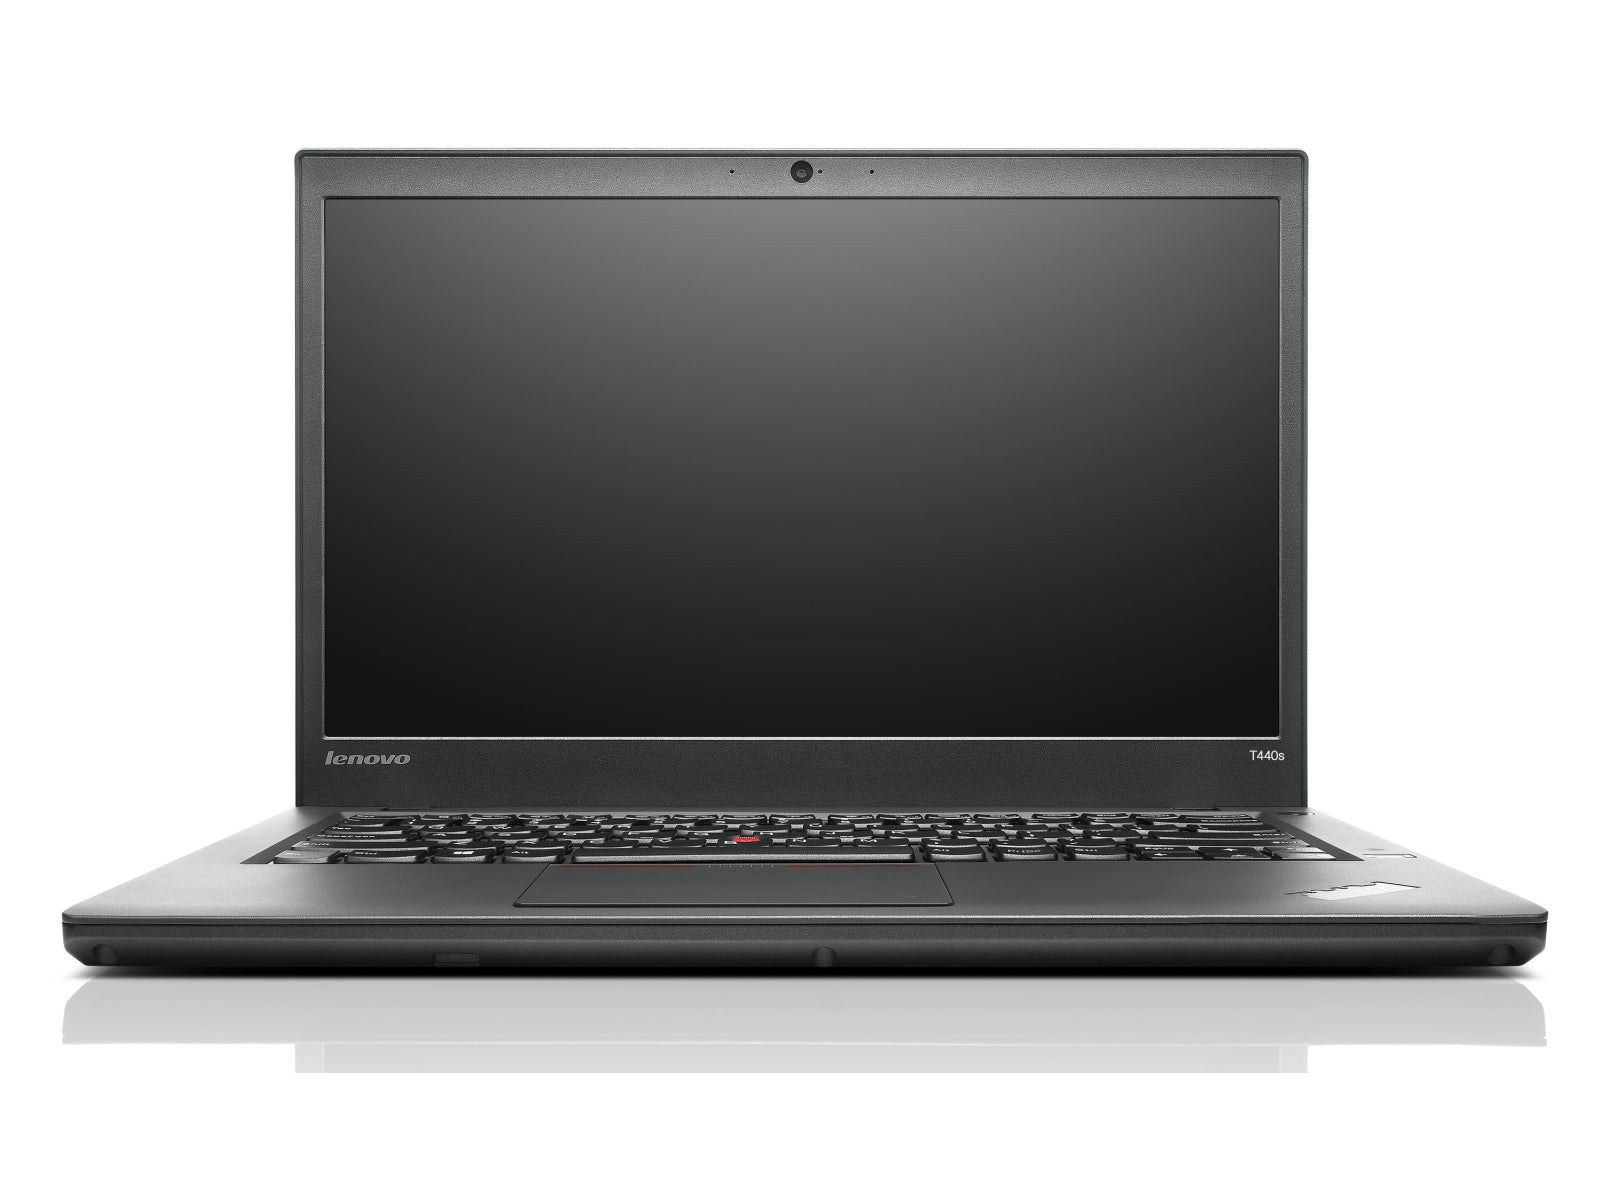 Lenovo ThinkPad T440S - My Store